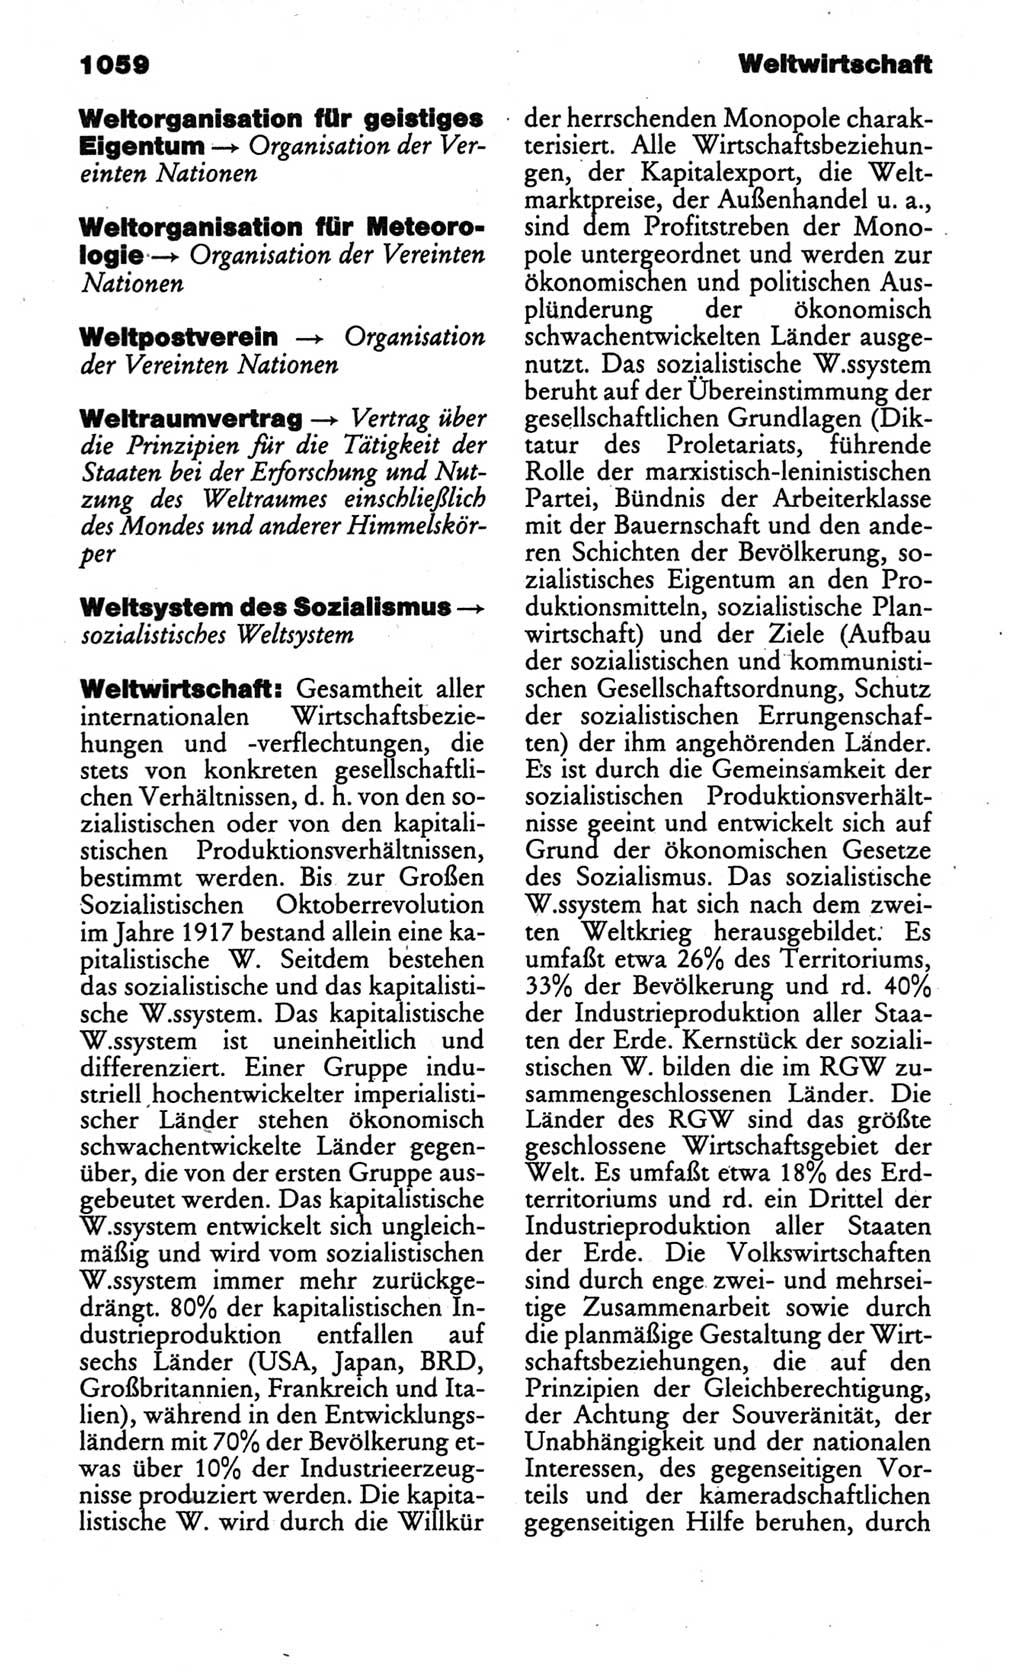 Kleines politisches Wörterbuch [Deutsche Demokratische Republik (DDR)] 1986, Seite 1059 (Kl. pol. Wb. DDR 1986, S. 1059)